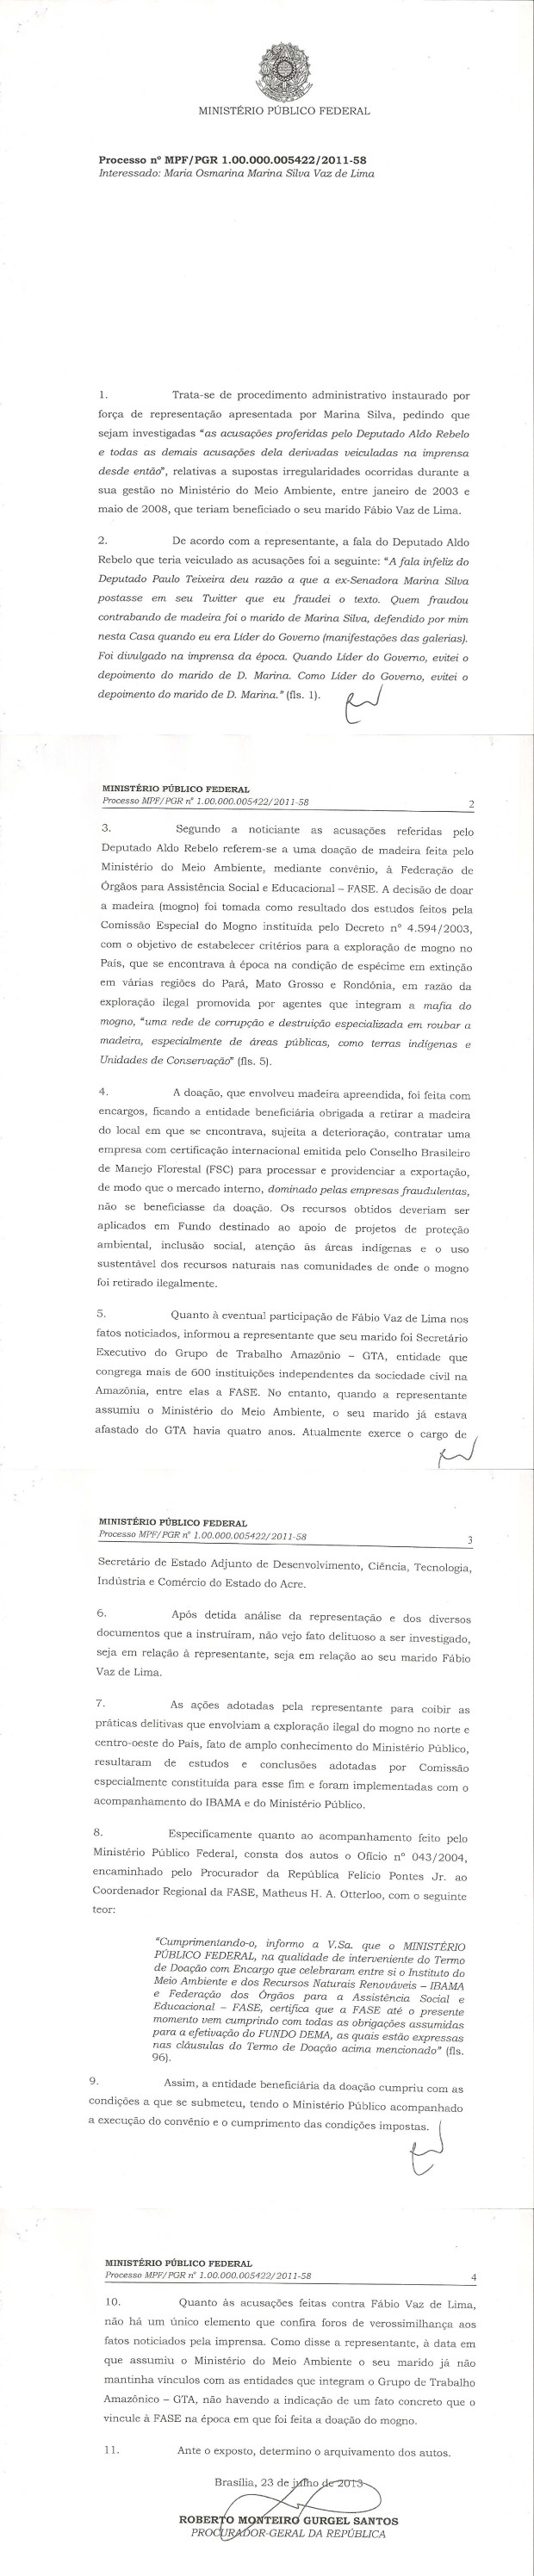 Documento assinado por Roberto Gurgel, defendendo arquivamento do processo contra Marina Silva (Foto: Reprodução)